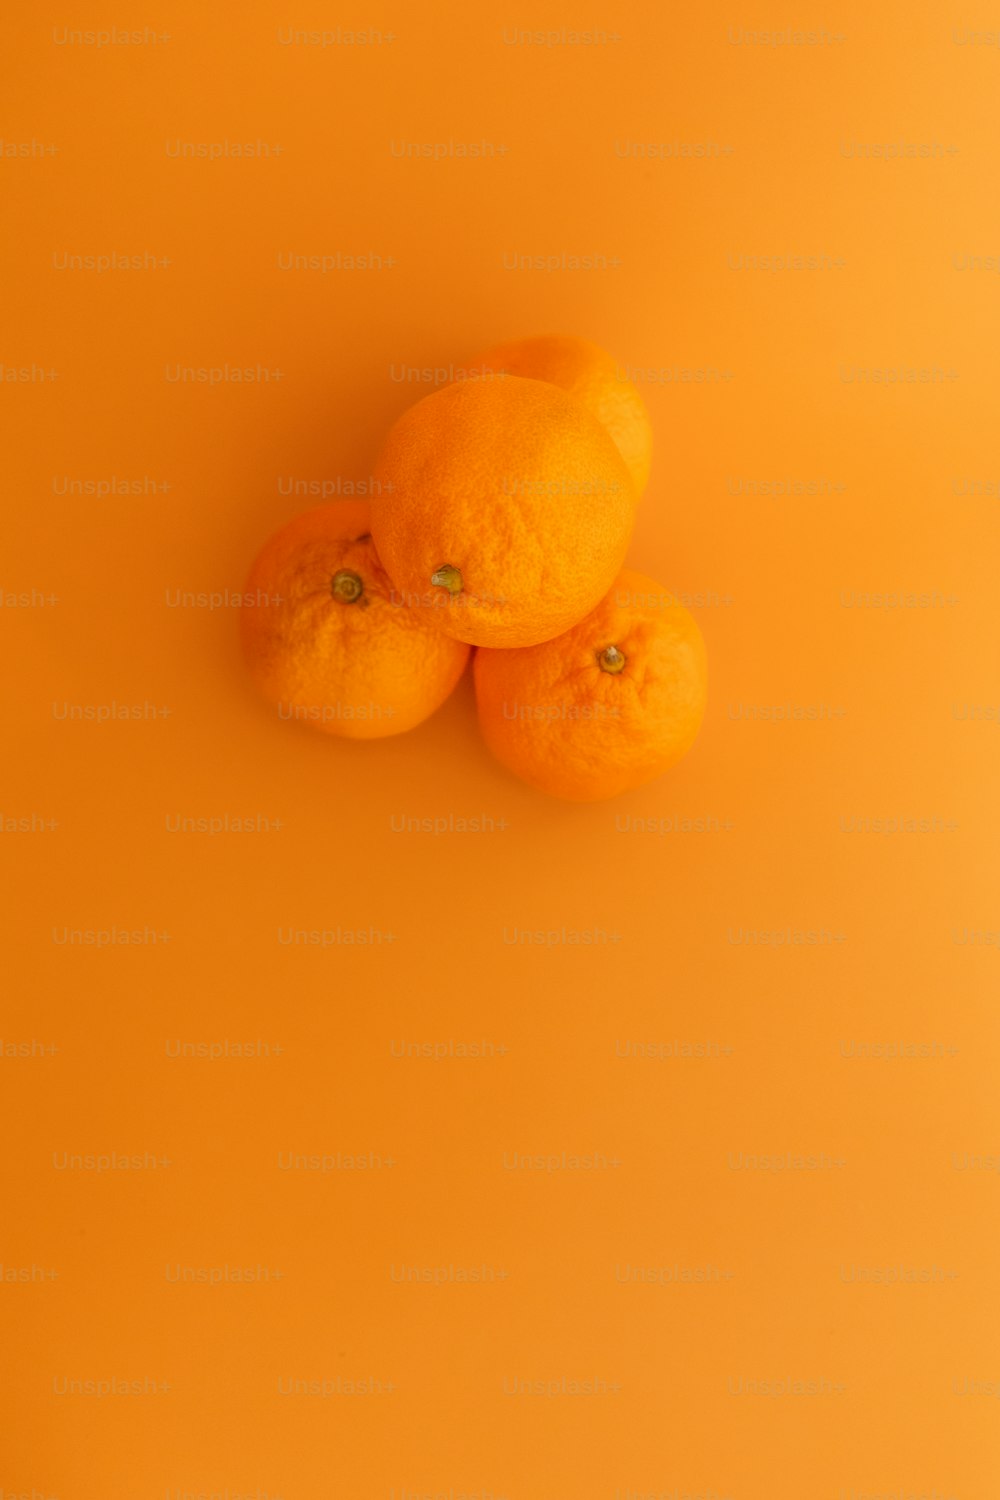 trois oranges posées sur une surface jaune